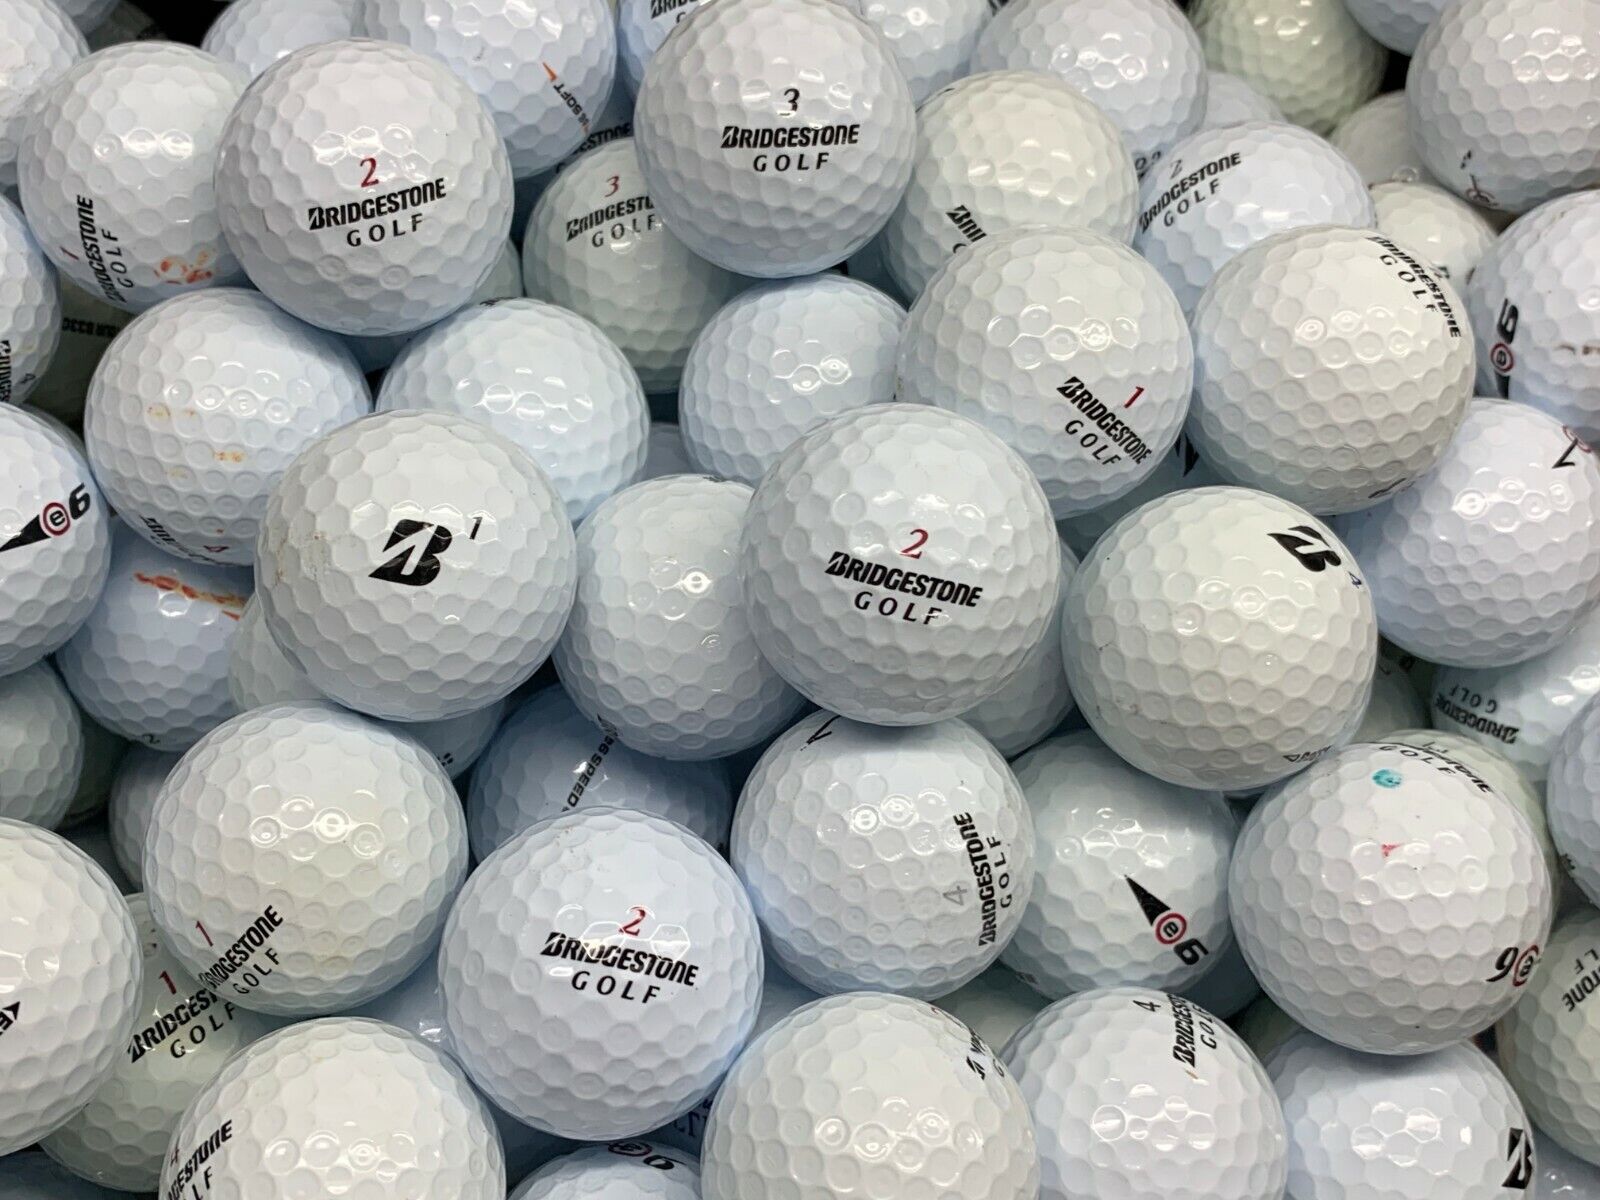 ::AAA - AAAAA Mint Condition Used Golf Balls Assorted Brands 